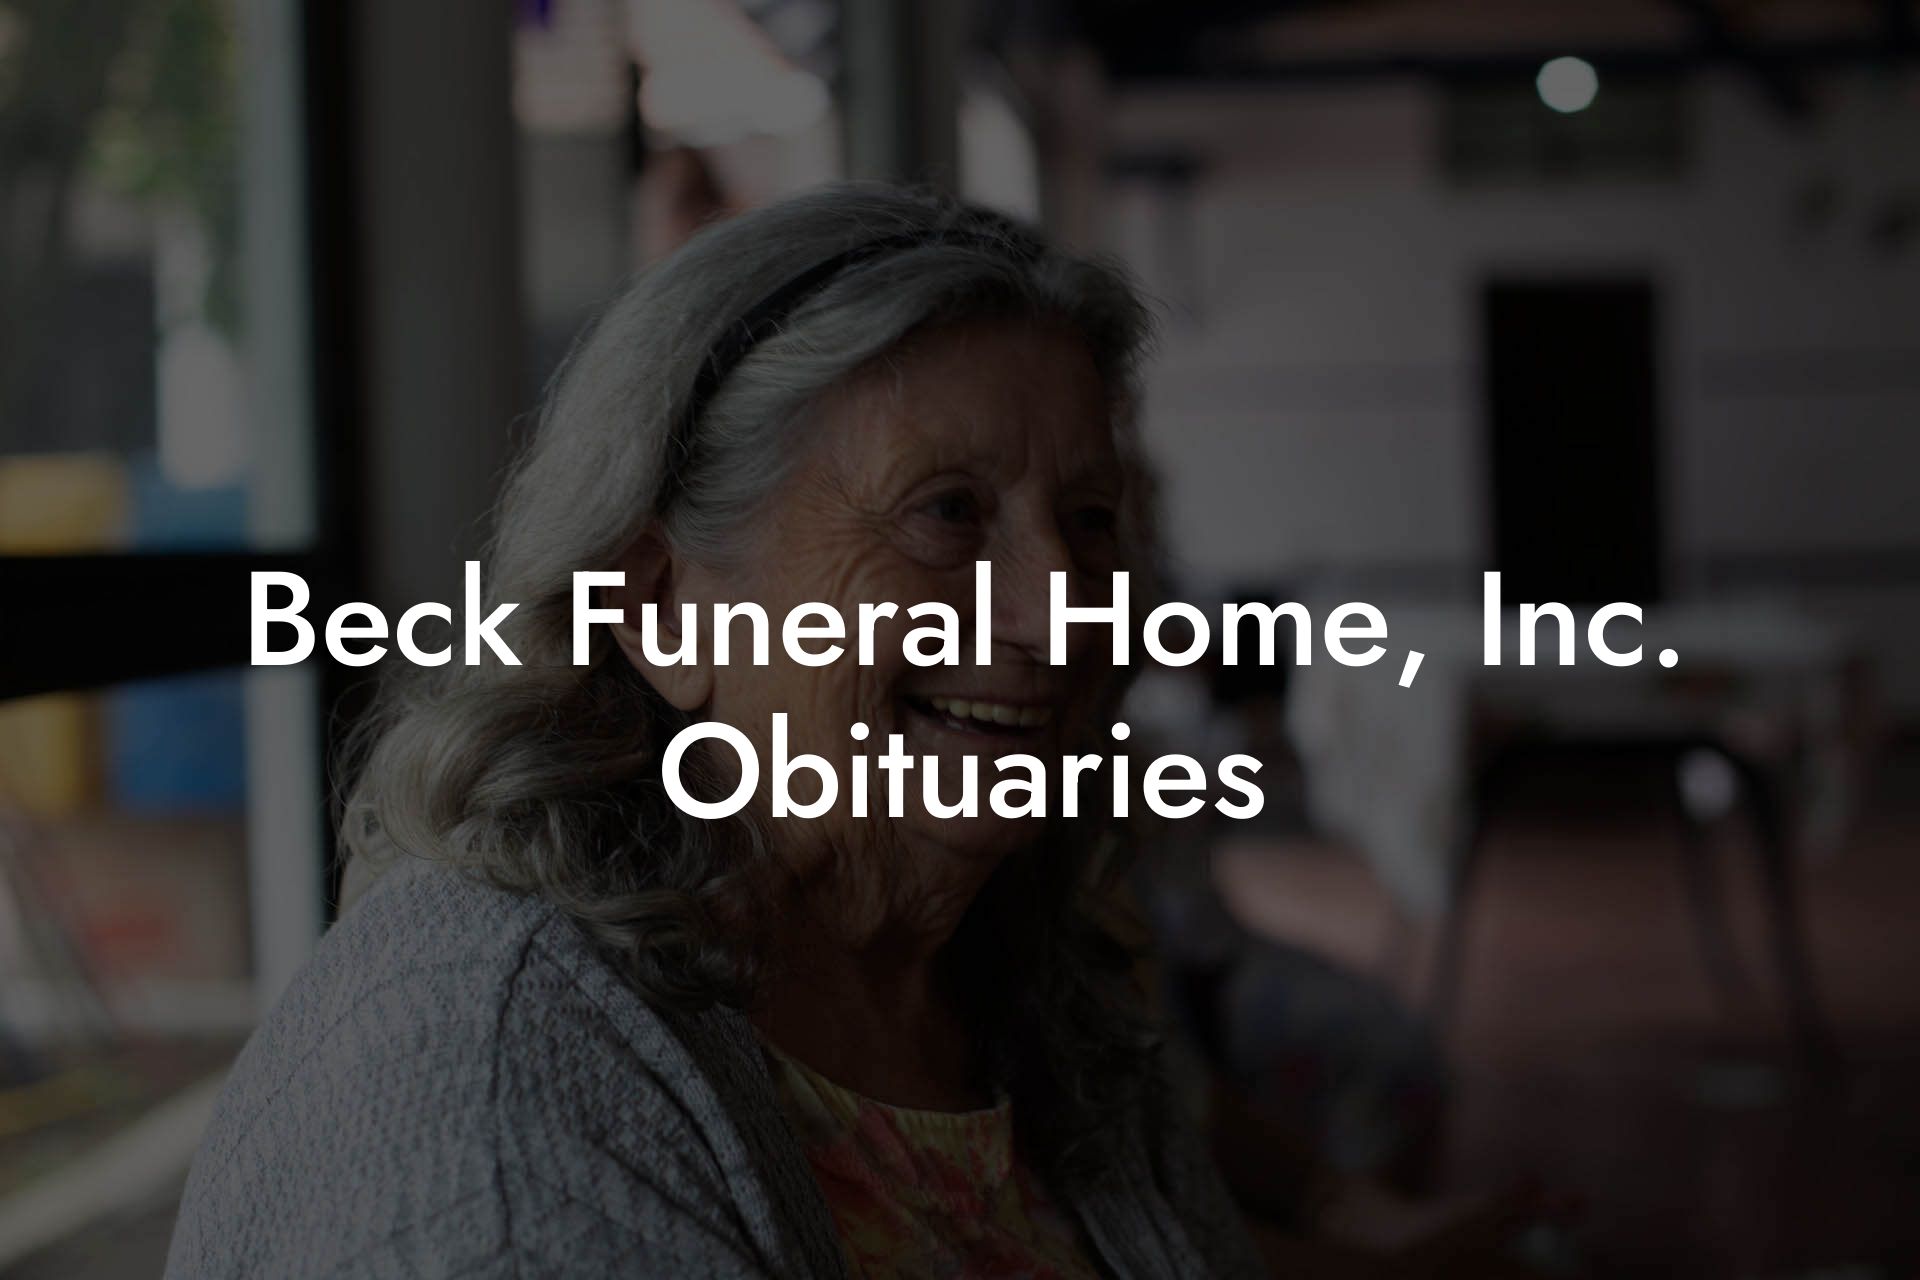 Beck Funeral Home, Inc. Obituaries